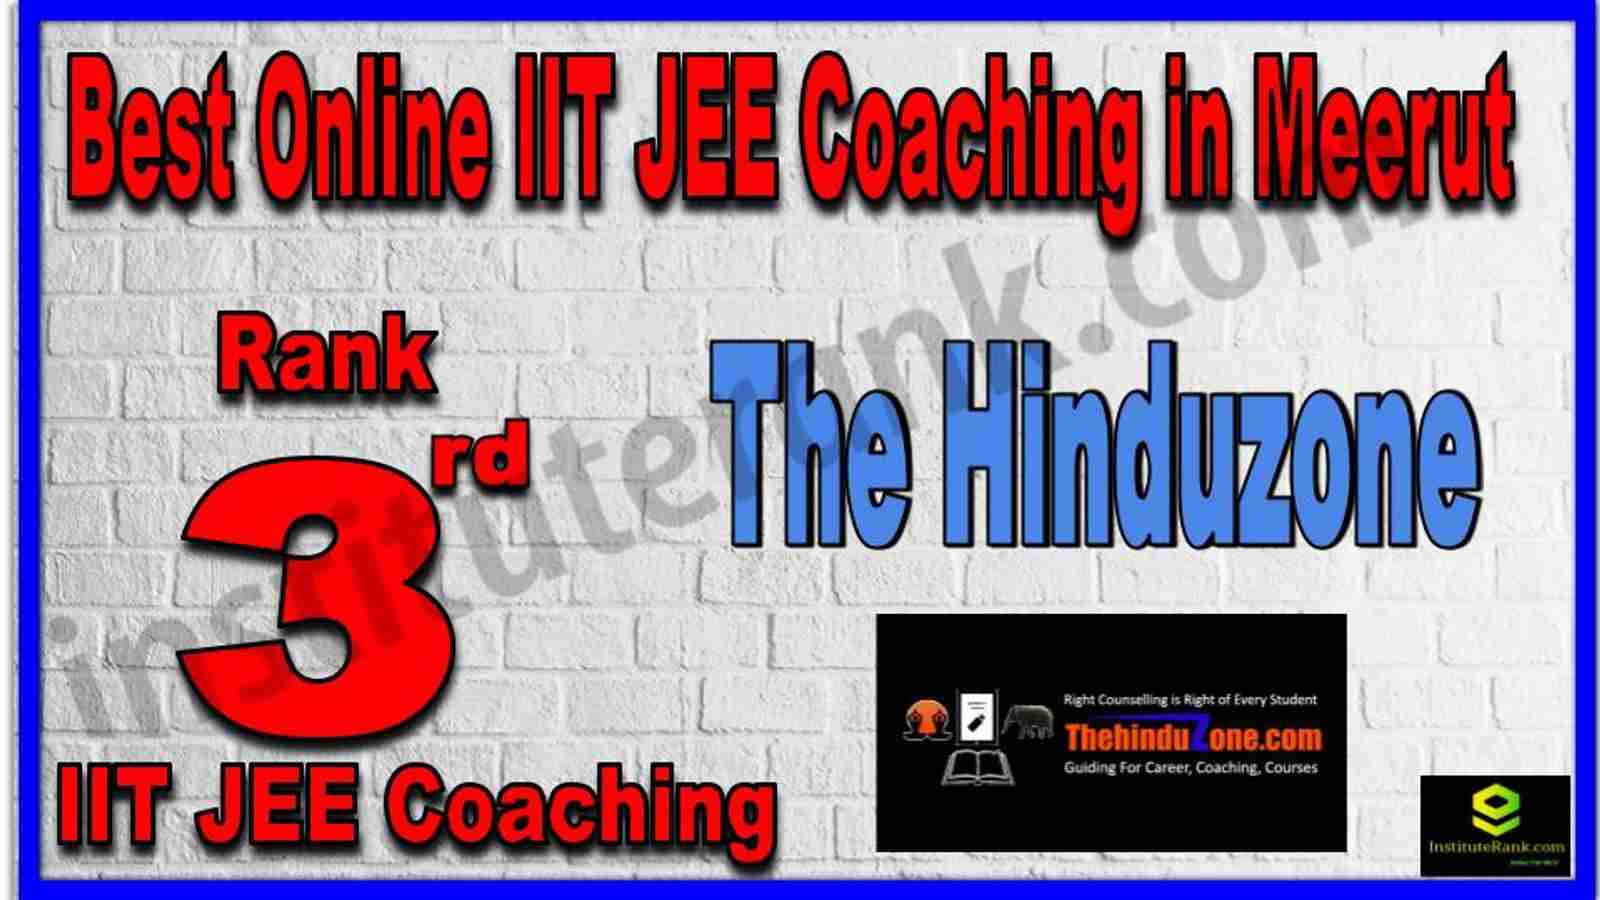 Rank 3rd Best Online IIT JEE Coaching in Meerut